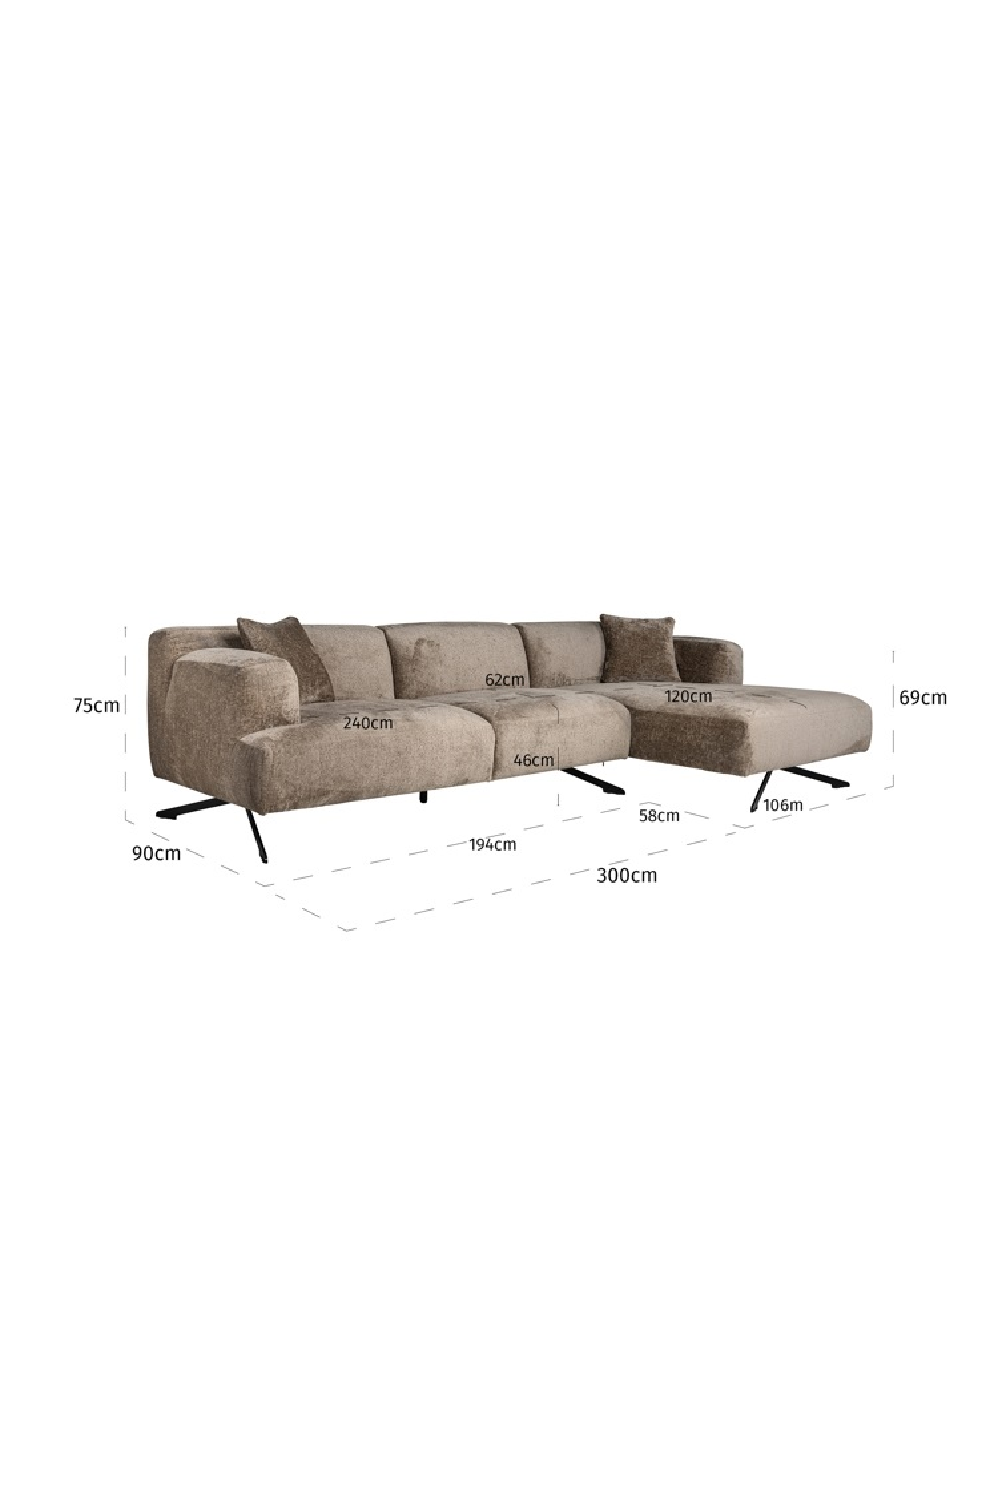 Taupe Chenille Contemporary Sofa | OROA Donovan | Oroa.com